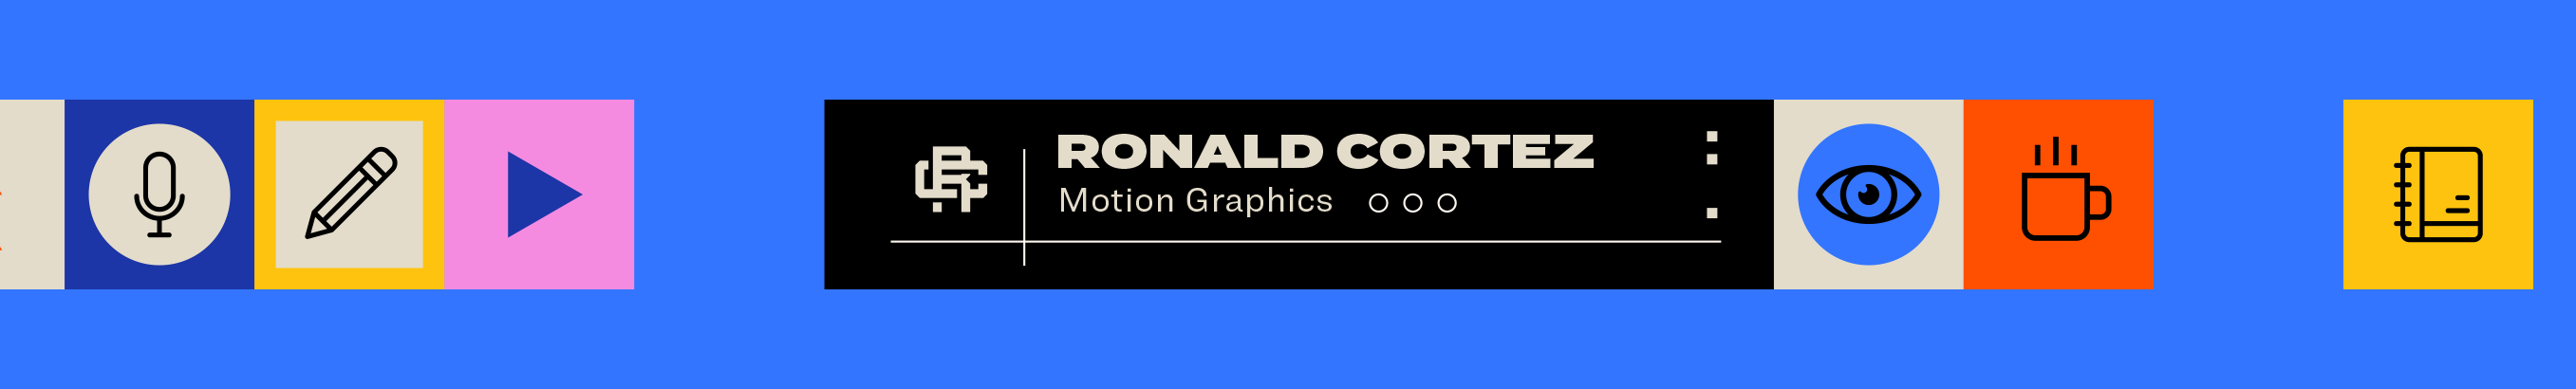 Banner de perfil de Ronald Cortez